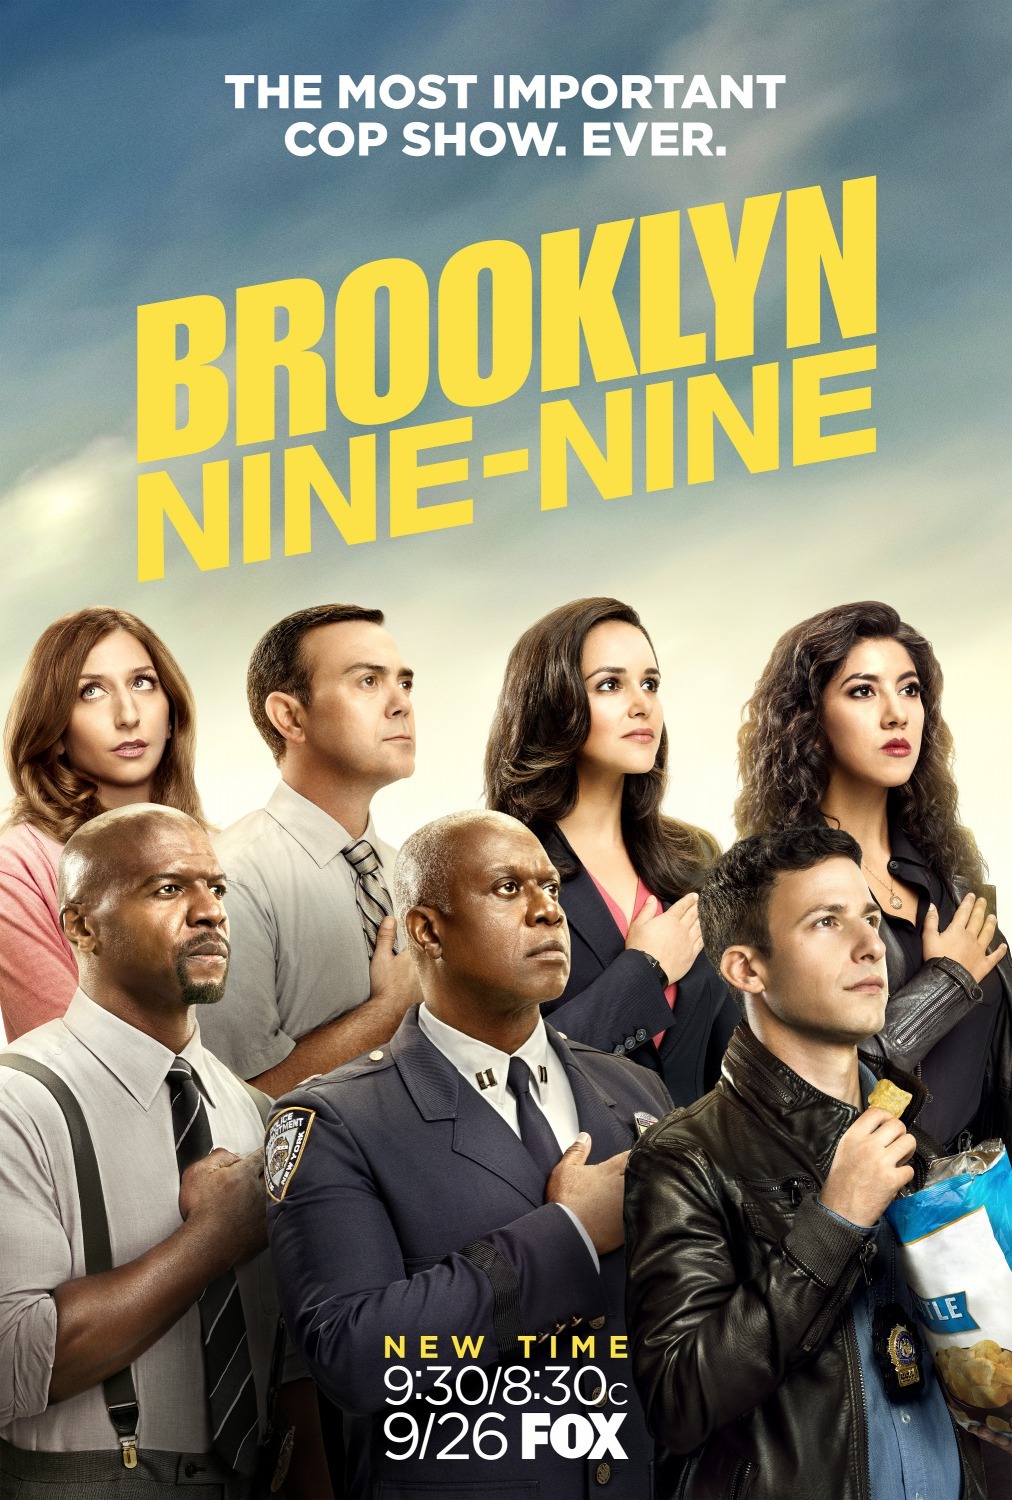 ดูหนังออนไลน์ฟรี Brooklyn Nine-Nine Season 4 EP.4 บรู๊คลินเก้า ปี 4 ตอนที่ 4